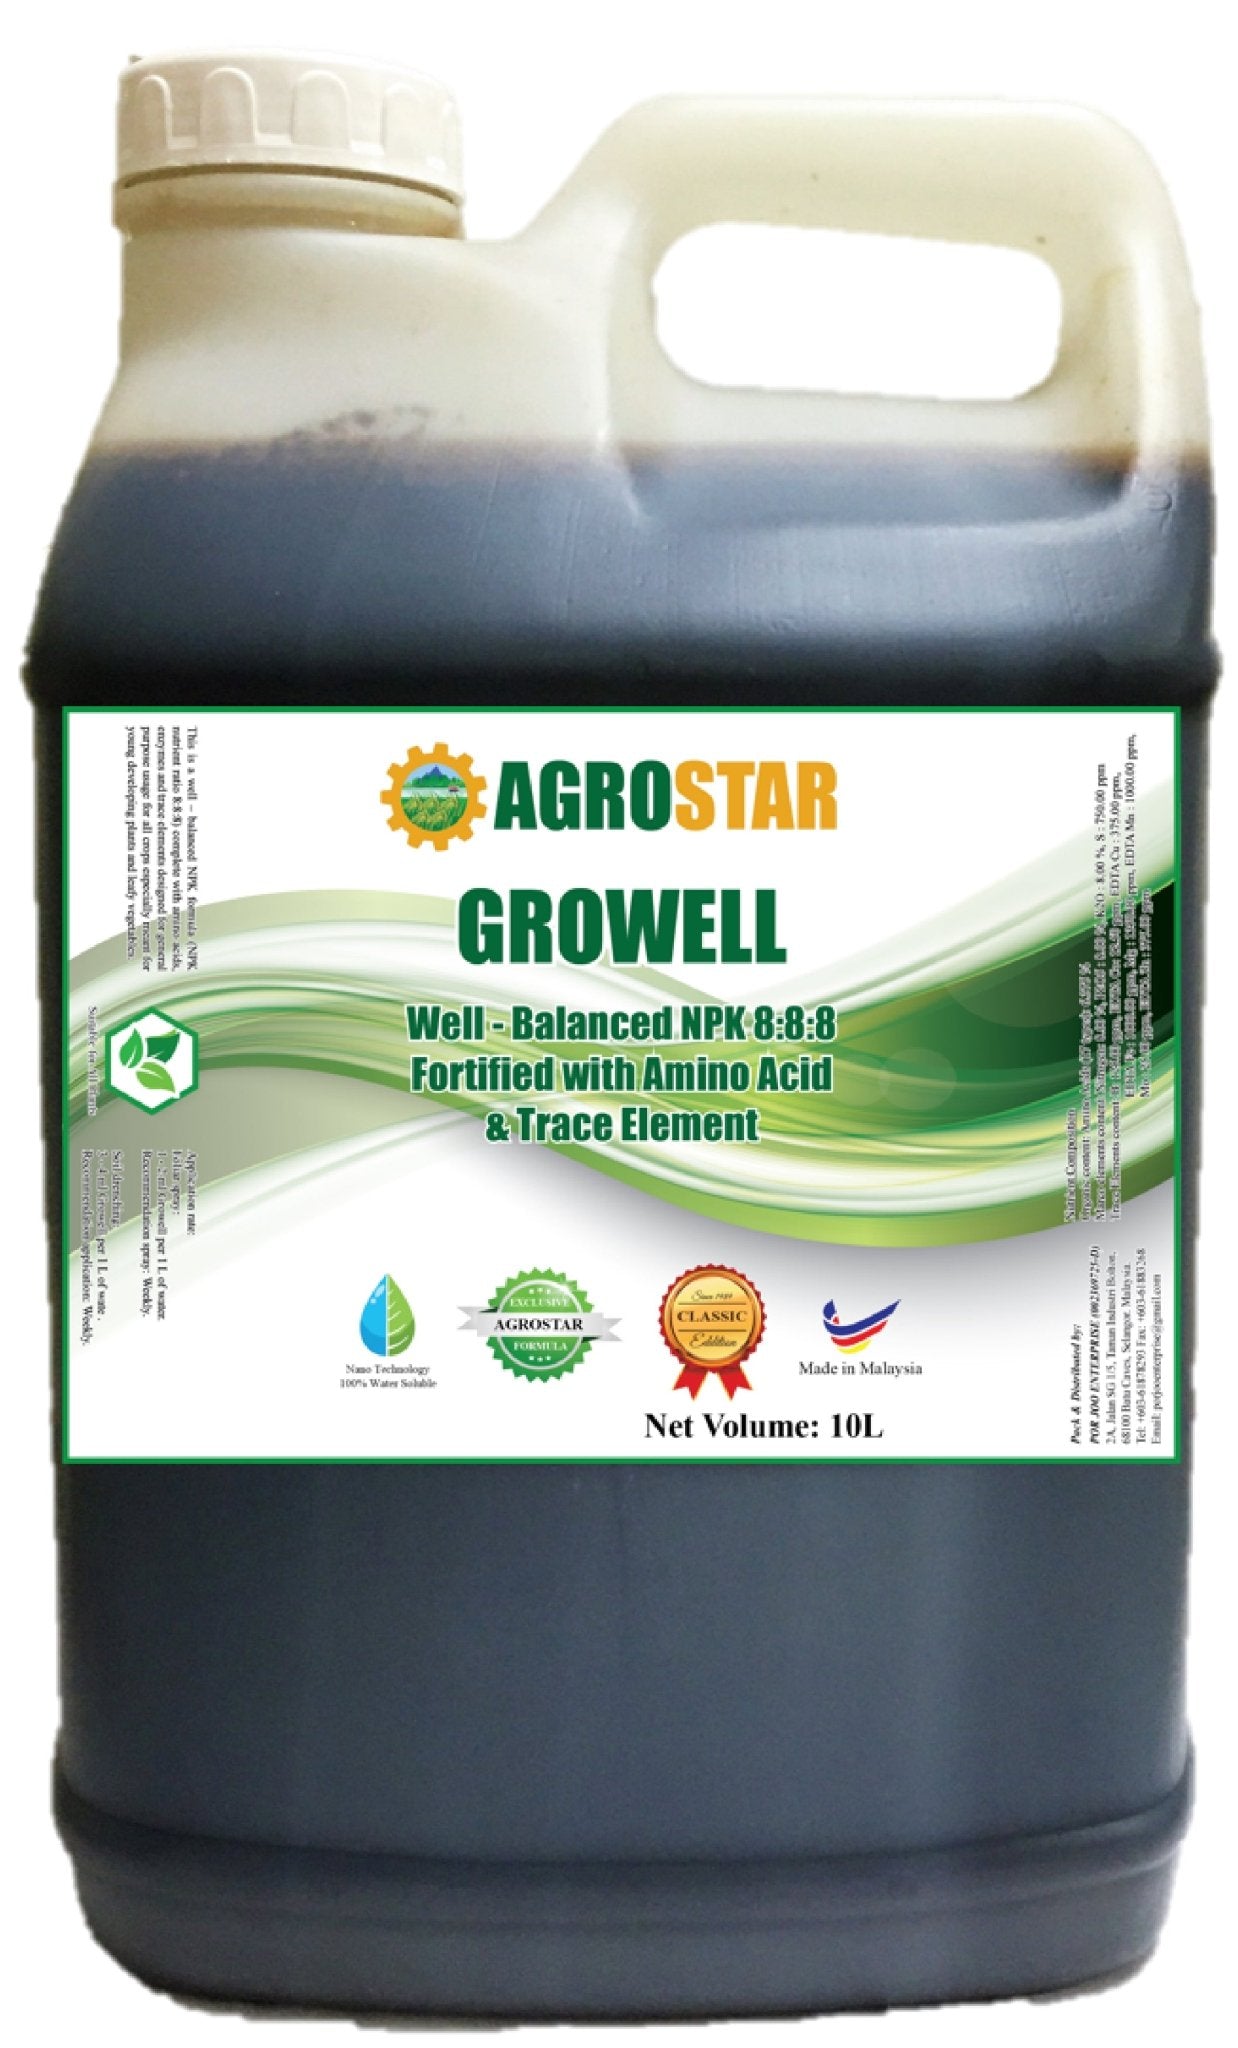 Agrostar Growell - Farm Doktor